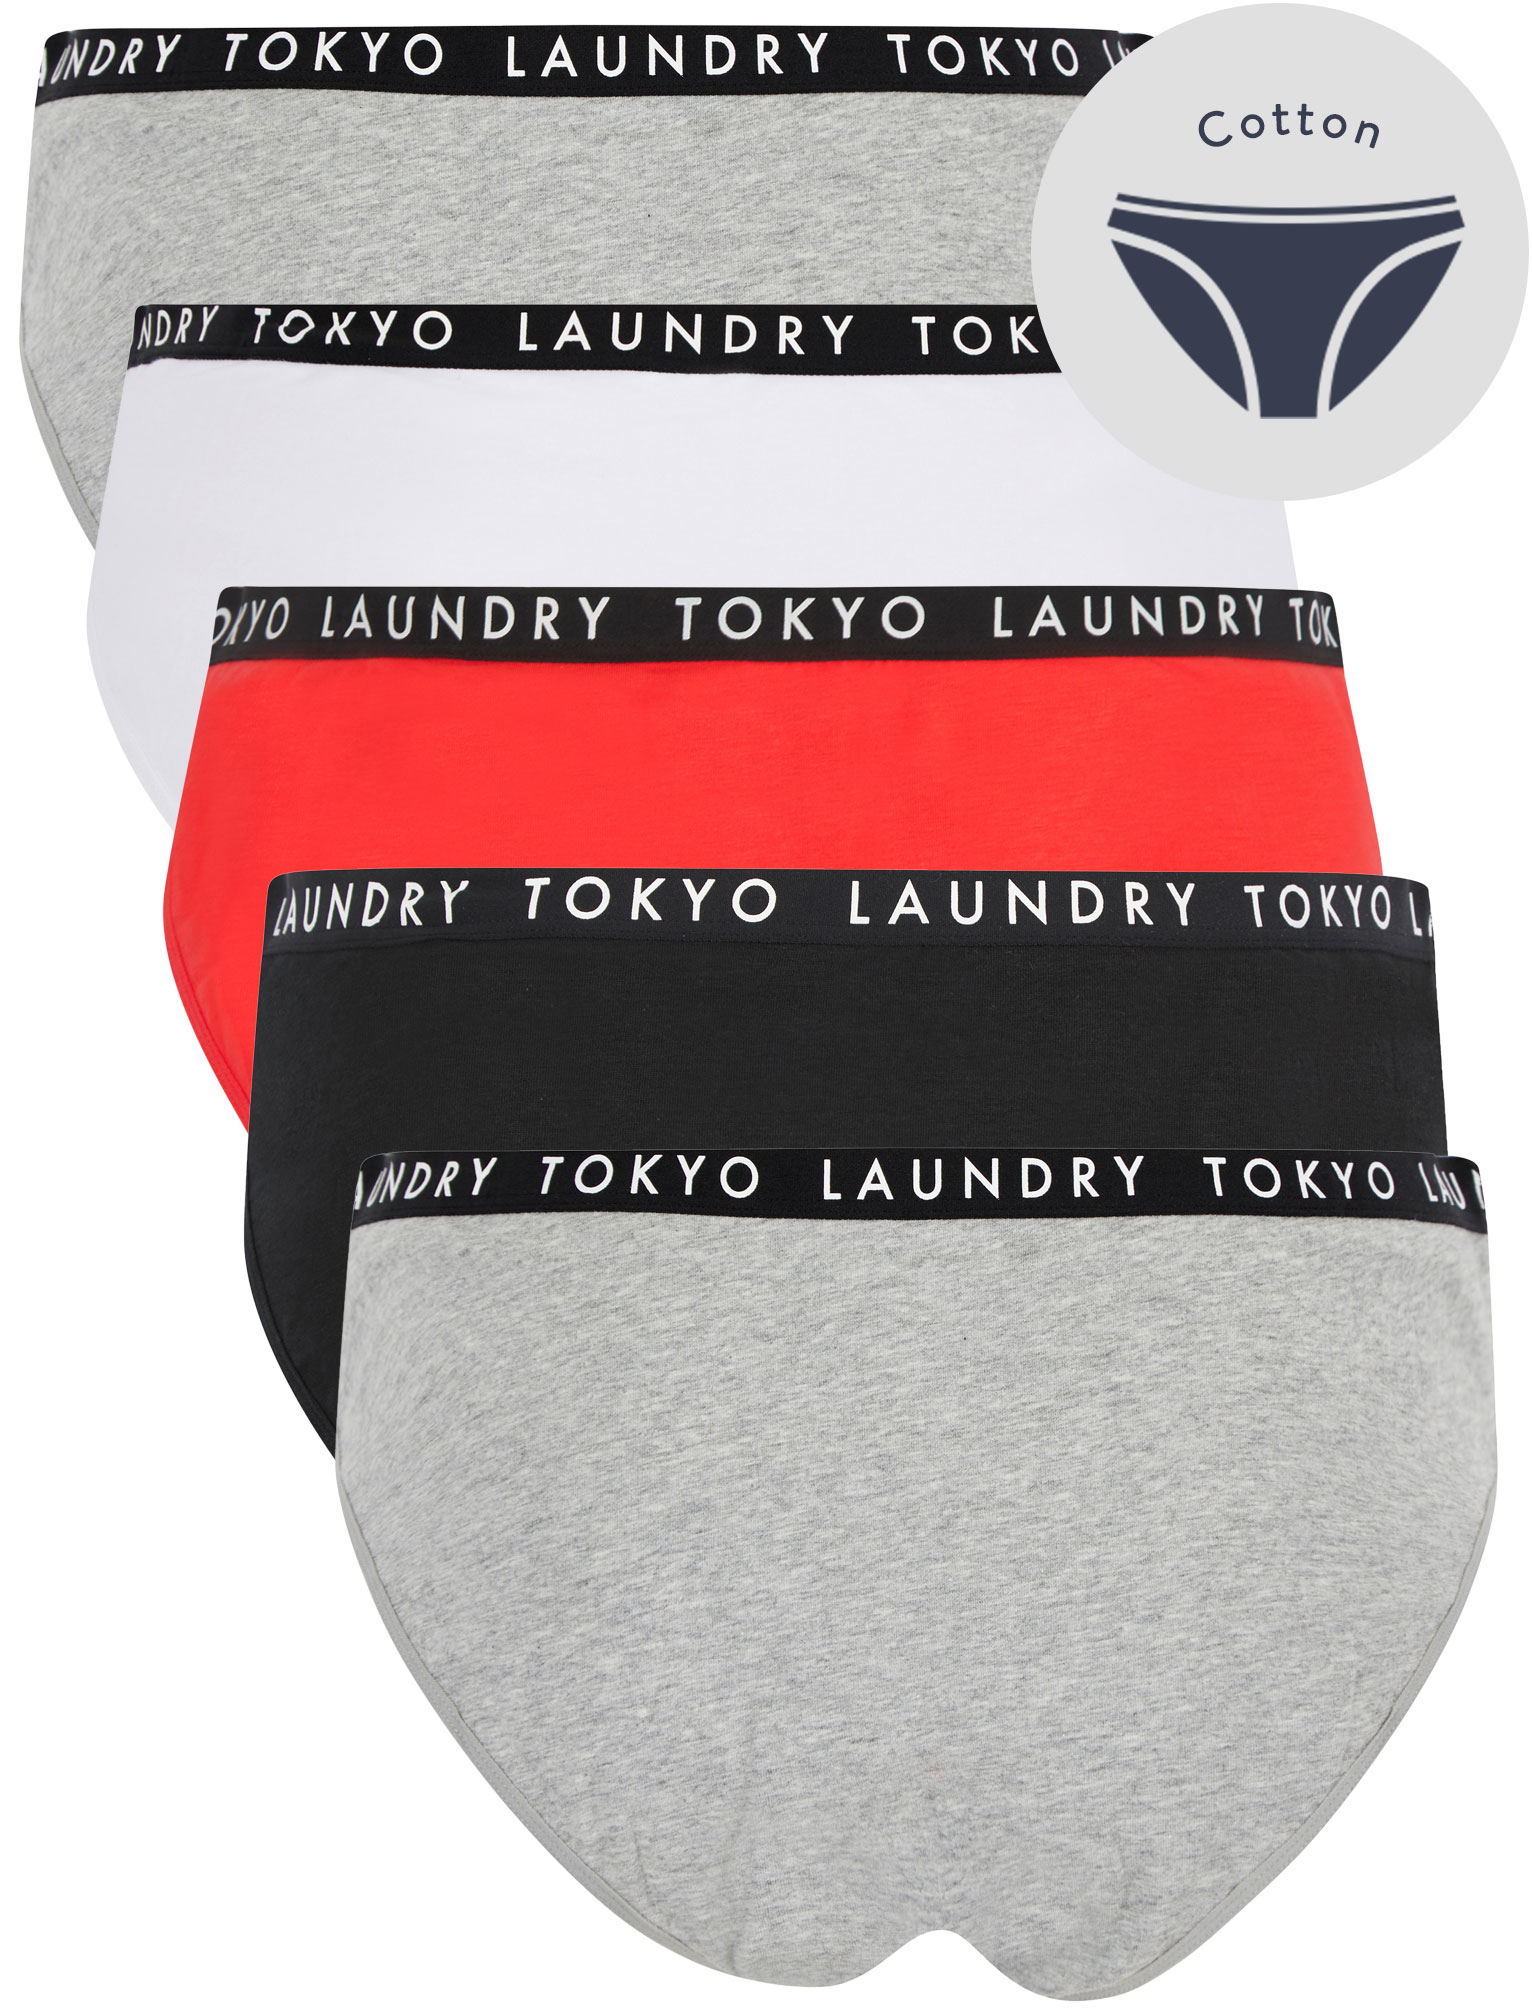 Women's underwear guide - Tokyo Laundry